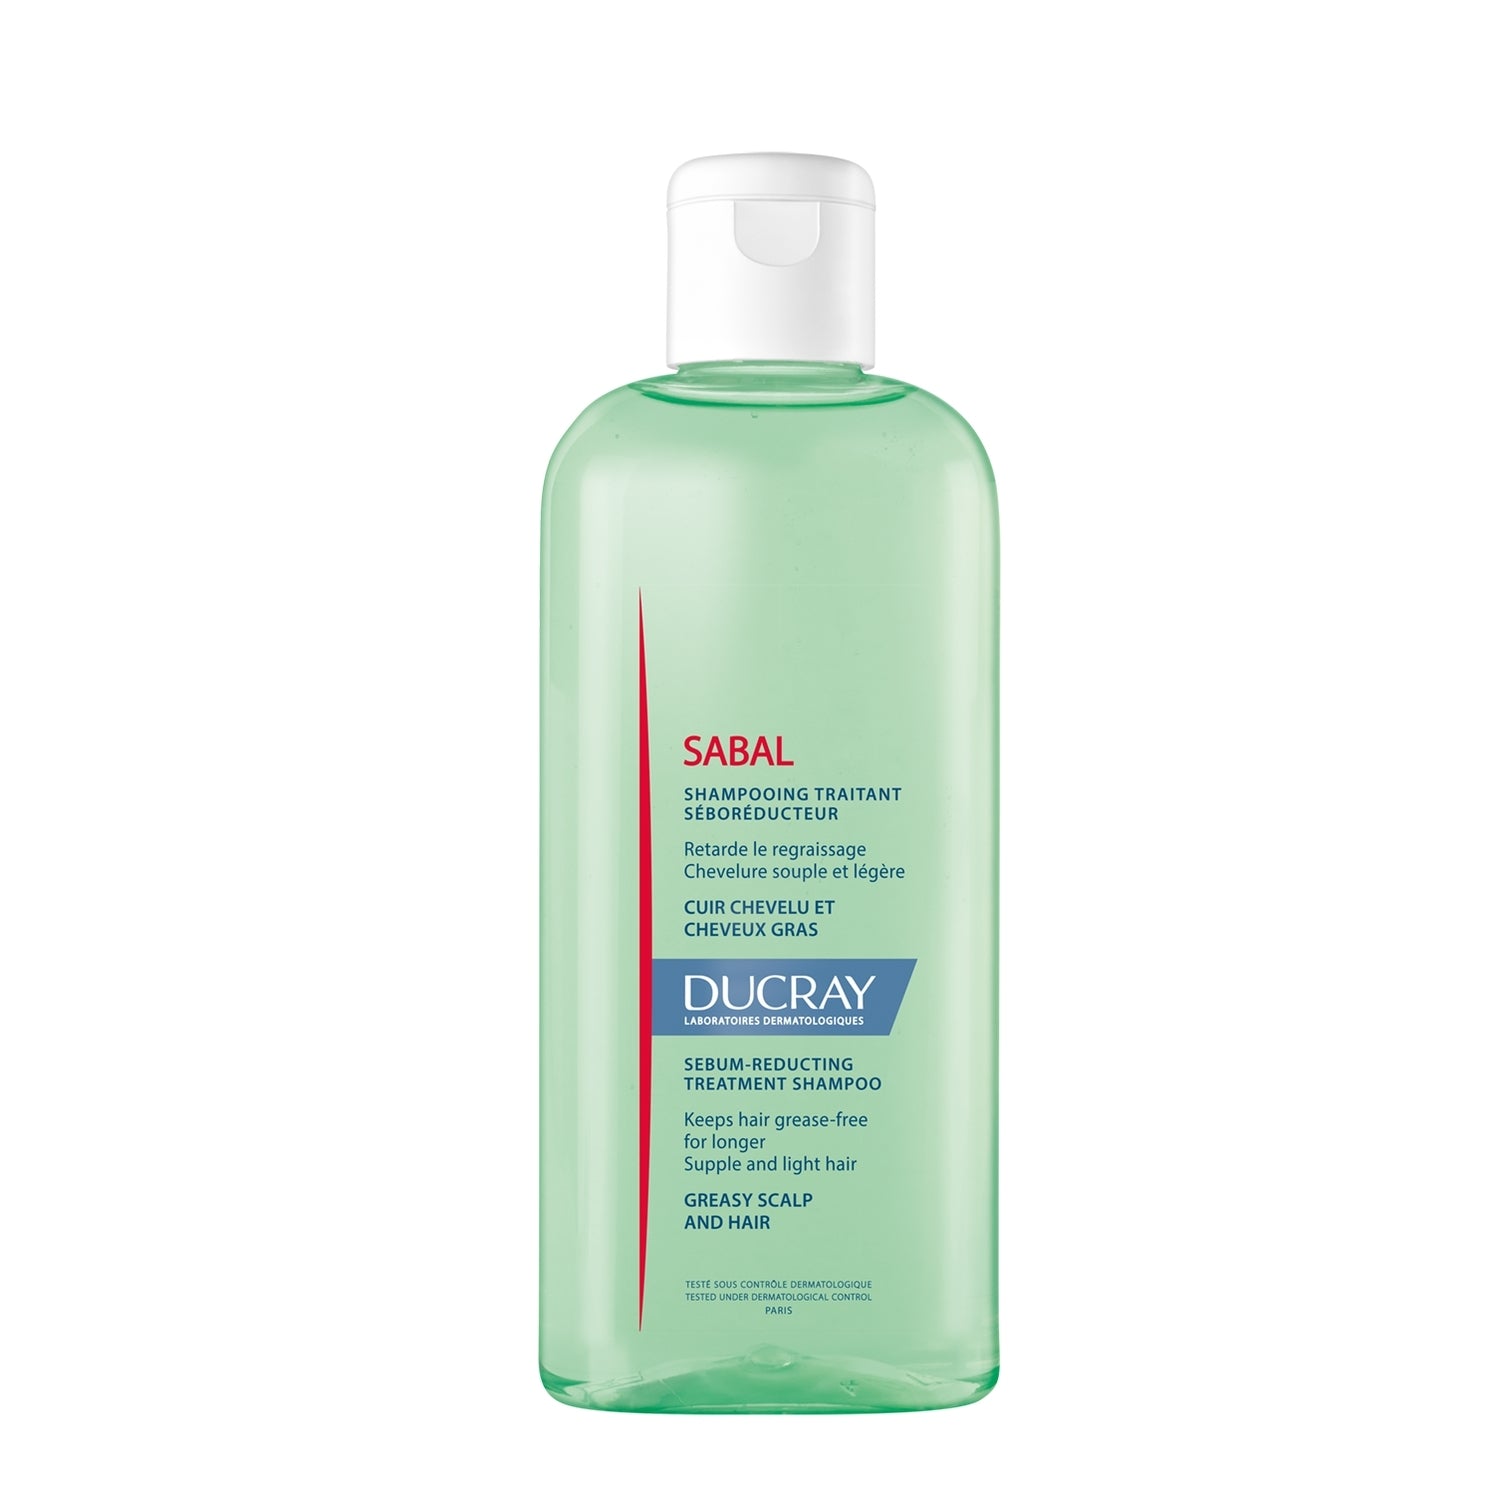 Ducray Sabal - Shampoo trattante sebo-normalizzante 200ml Shampoo Riequilibrante,Shampoo Purificante